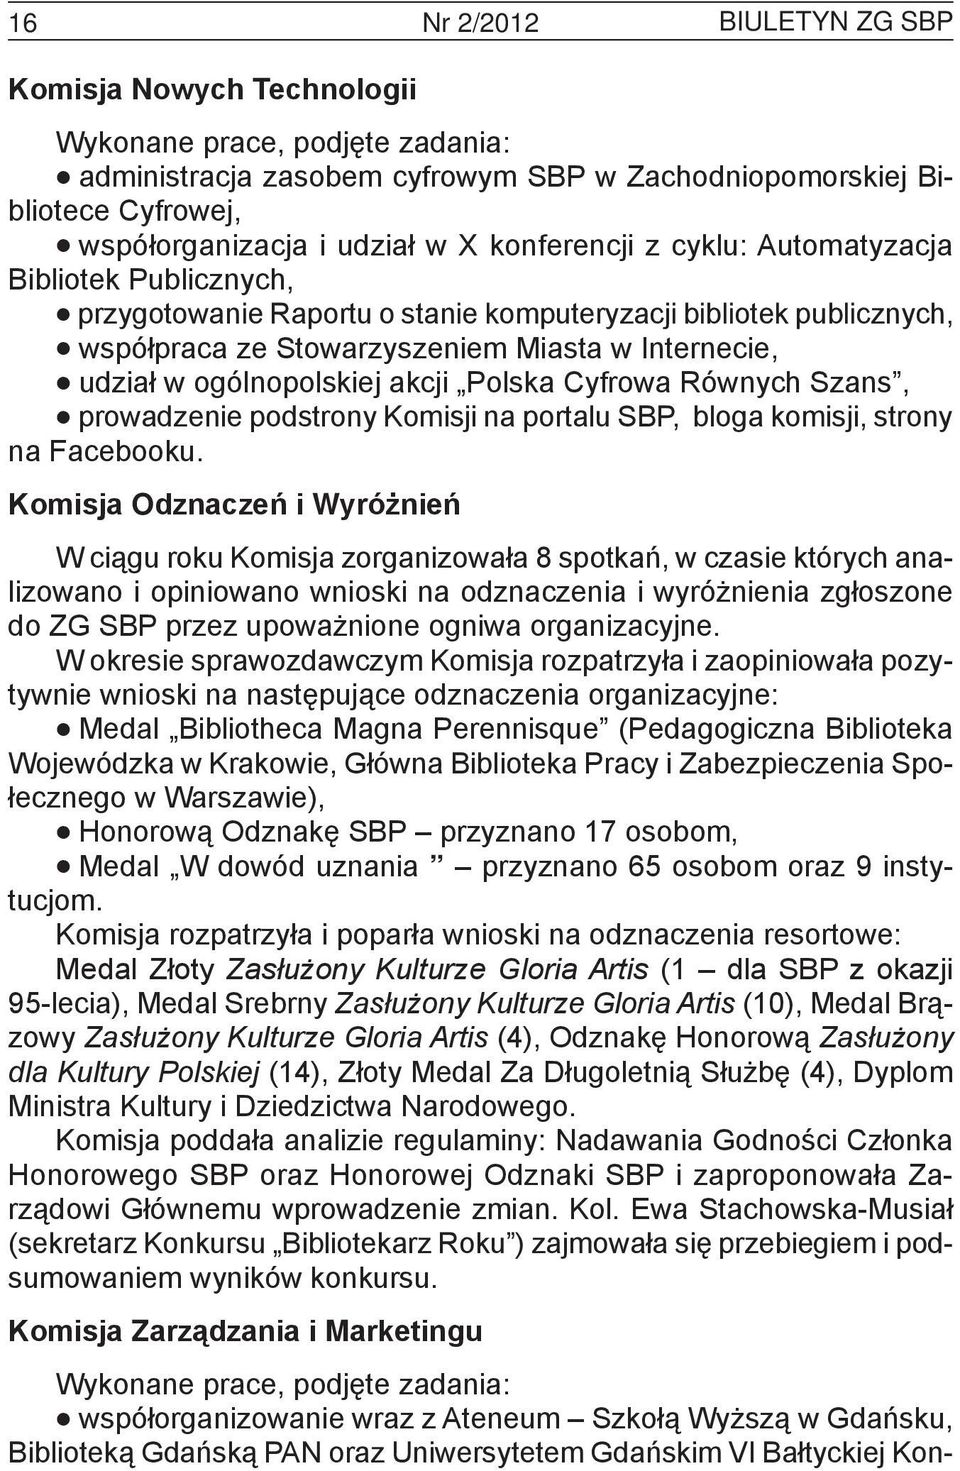 ogólnopolskiej akcji Polska Cyfrowa Równych Szans, prowadzenie podstrony Komisji na portalu SBP, bloga komisji, strony na Facebooku.